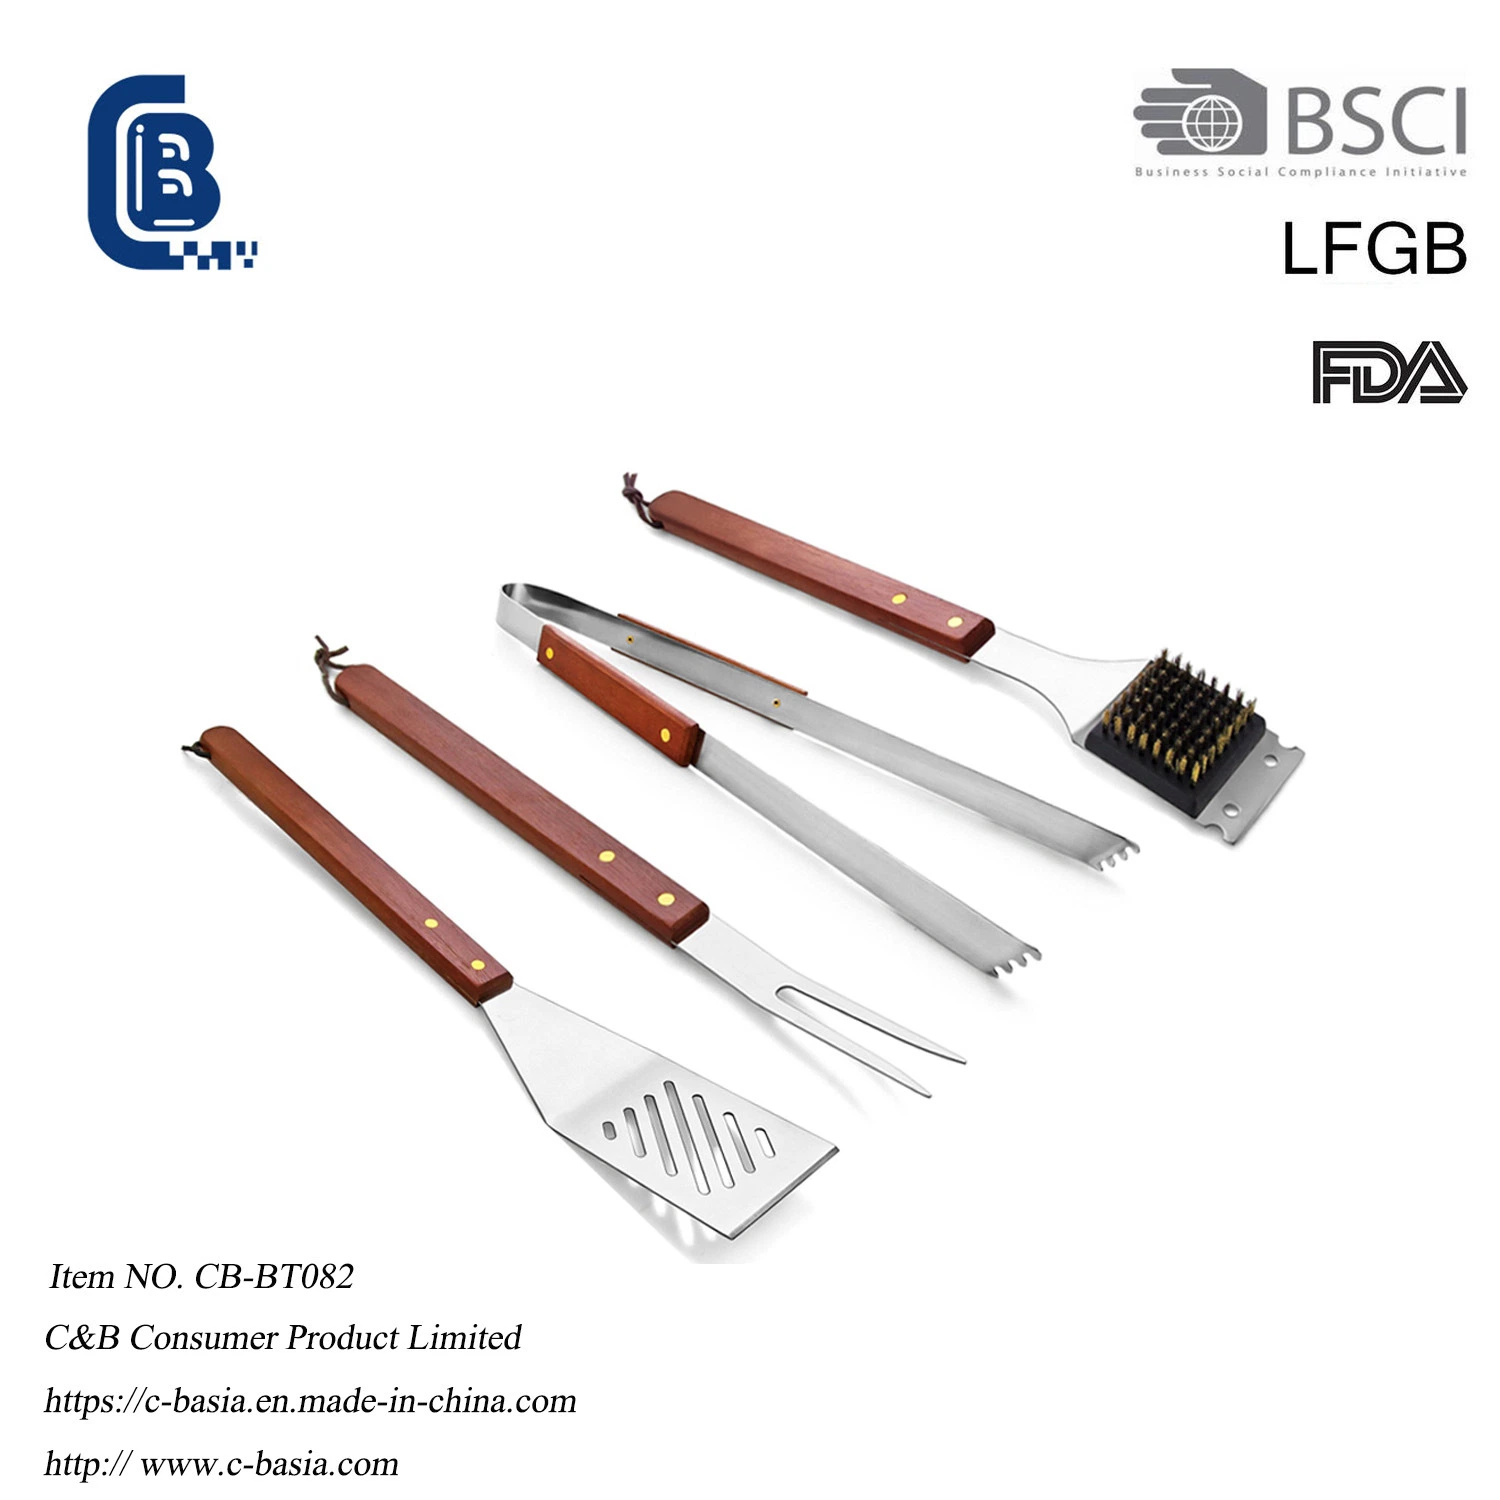 4 PCS Wood Handle Grilling Barbecue Tools Set, Grill BBQ Tools, Spatula Tong Fork 6